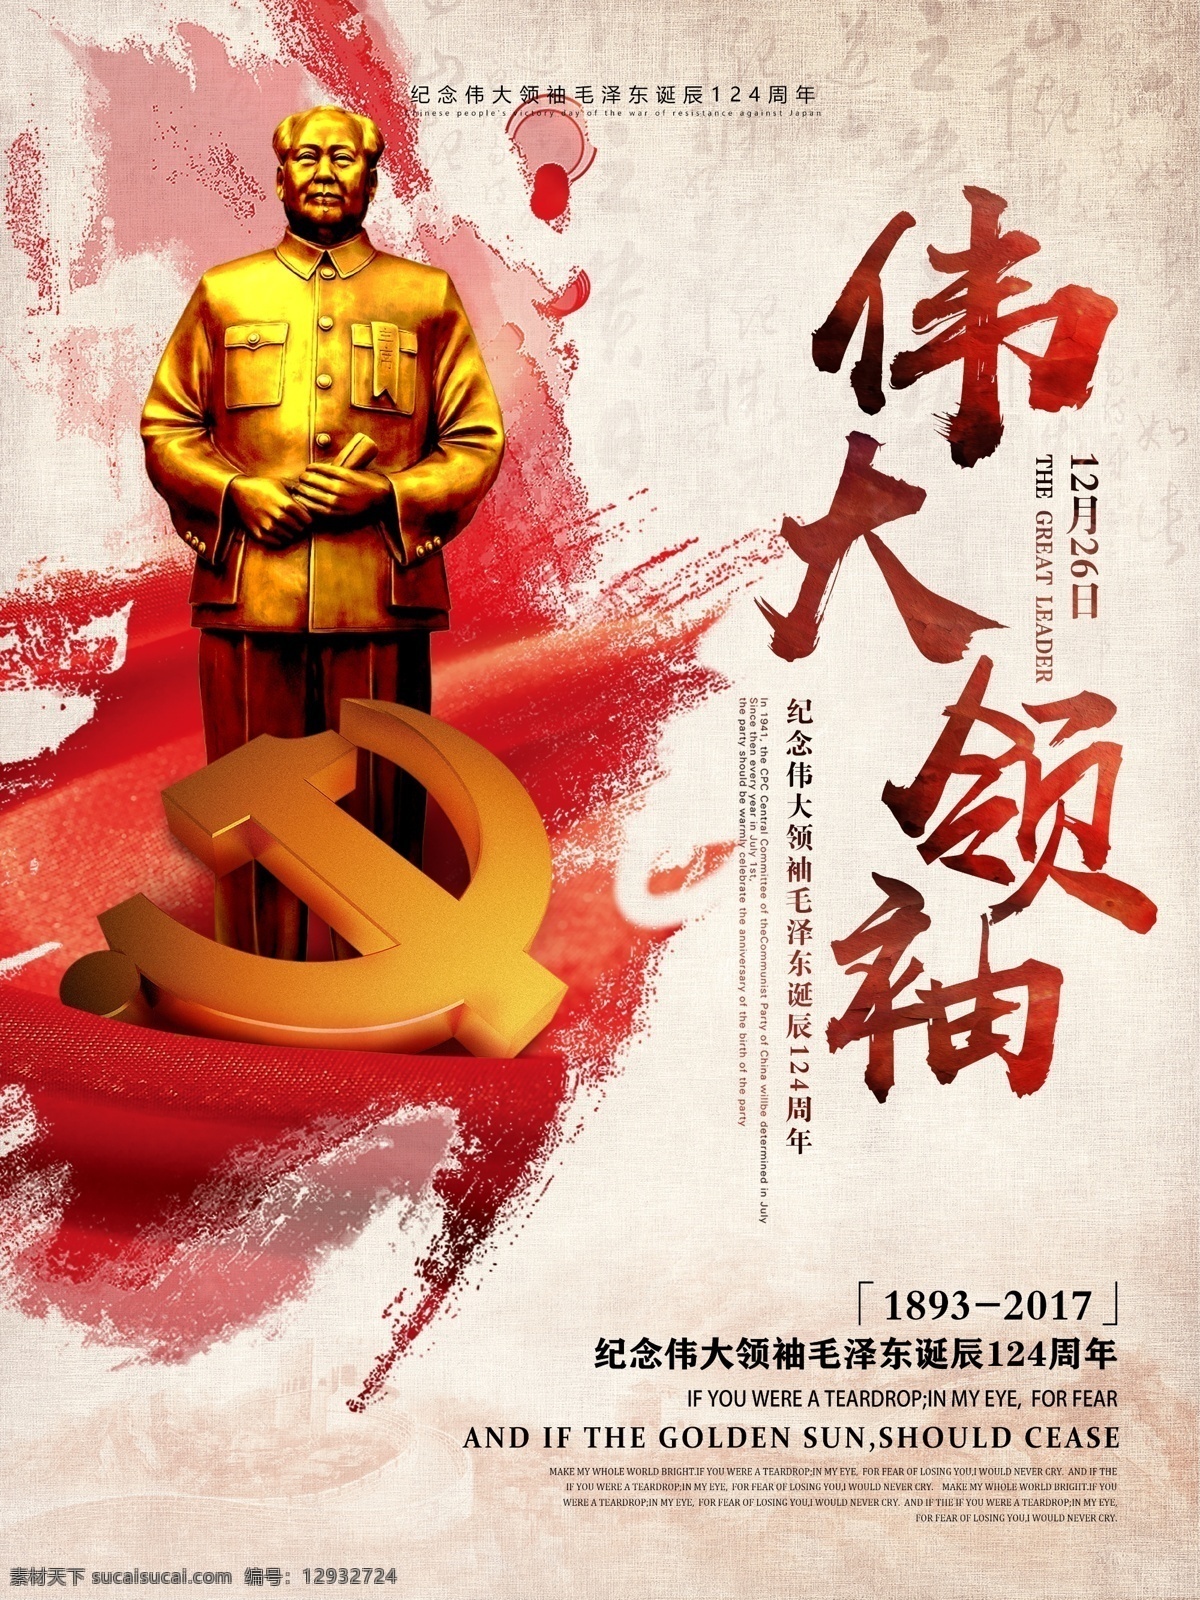 伟大 领袖 毛泽东 诞辰 周年纪念 党建 海报 诞辰纪念 党建海报 党建展板 纪念 纪念日 毛泽东诞辰 周年 毛主席 伟大领袖 一代伟人 展板